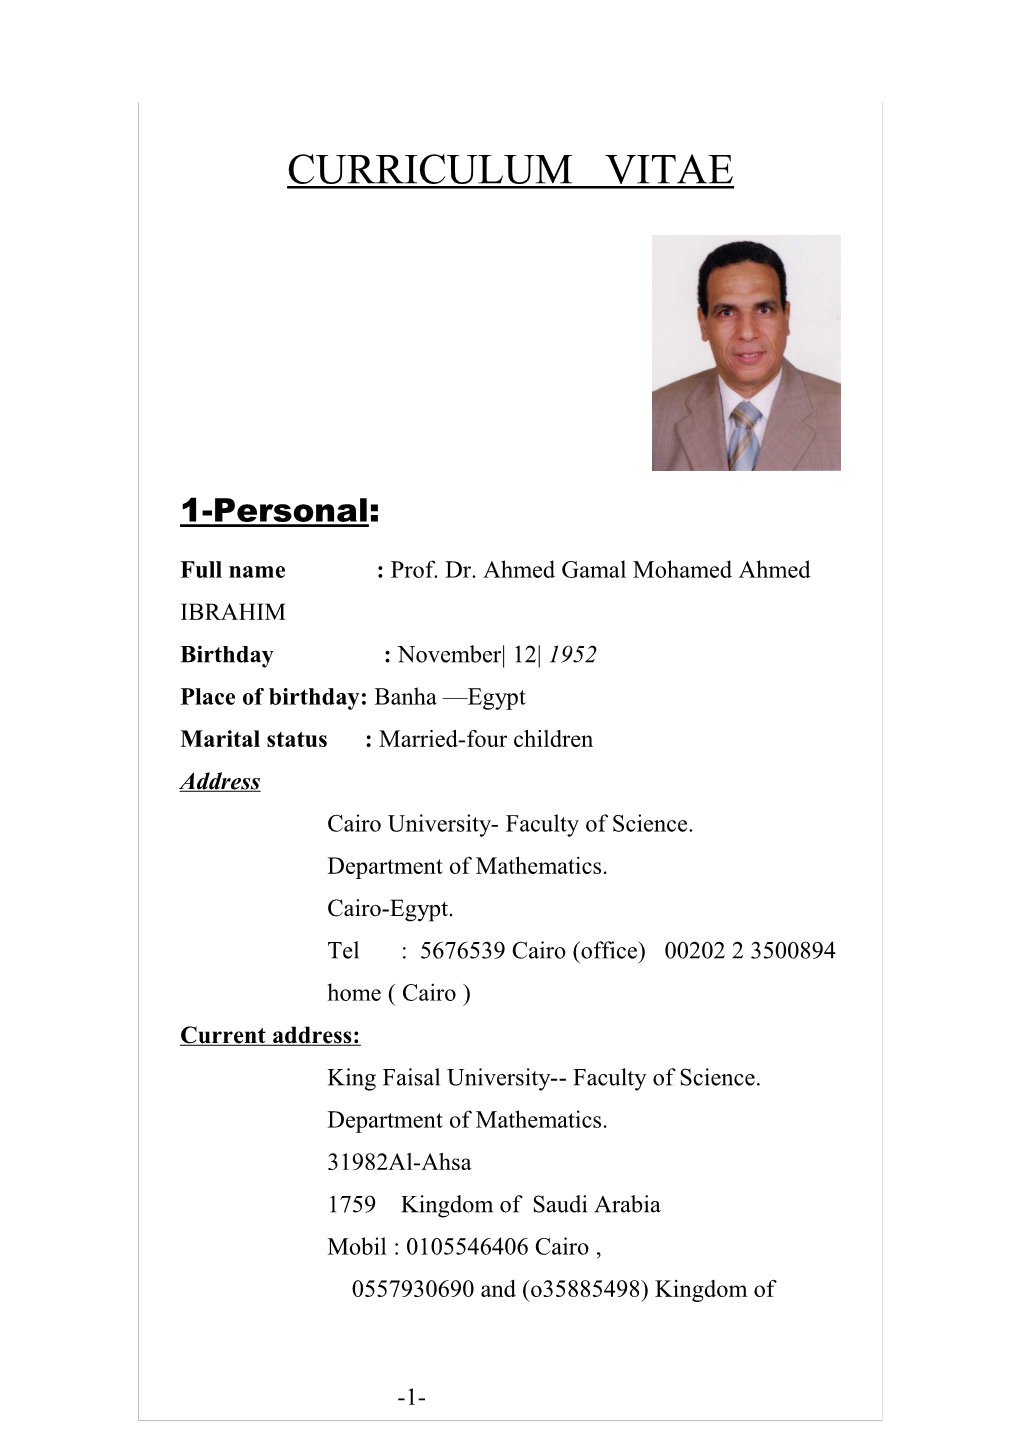 Full Name : Prof. Dr. Ahmed Gamal Mohamed Ahmed IBRAHIM